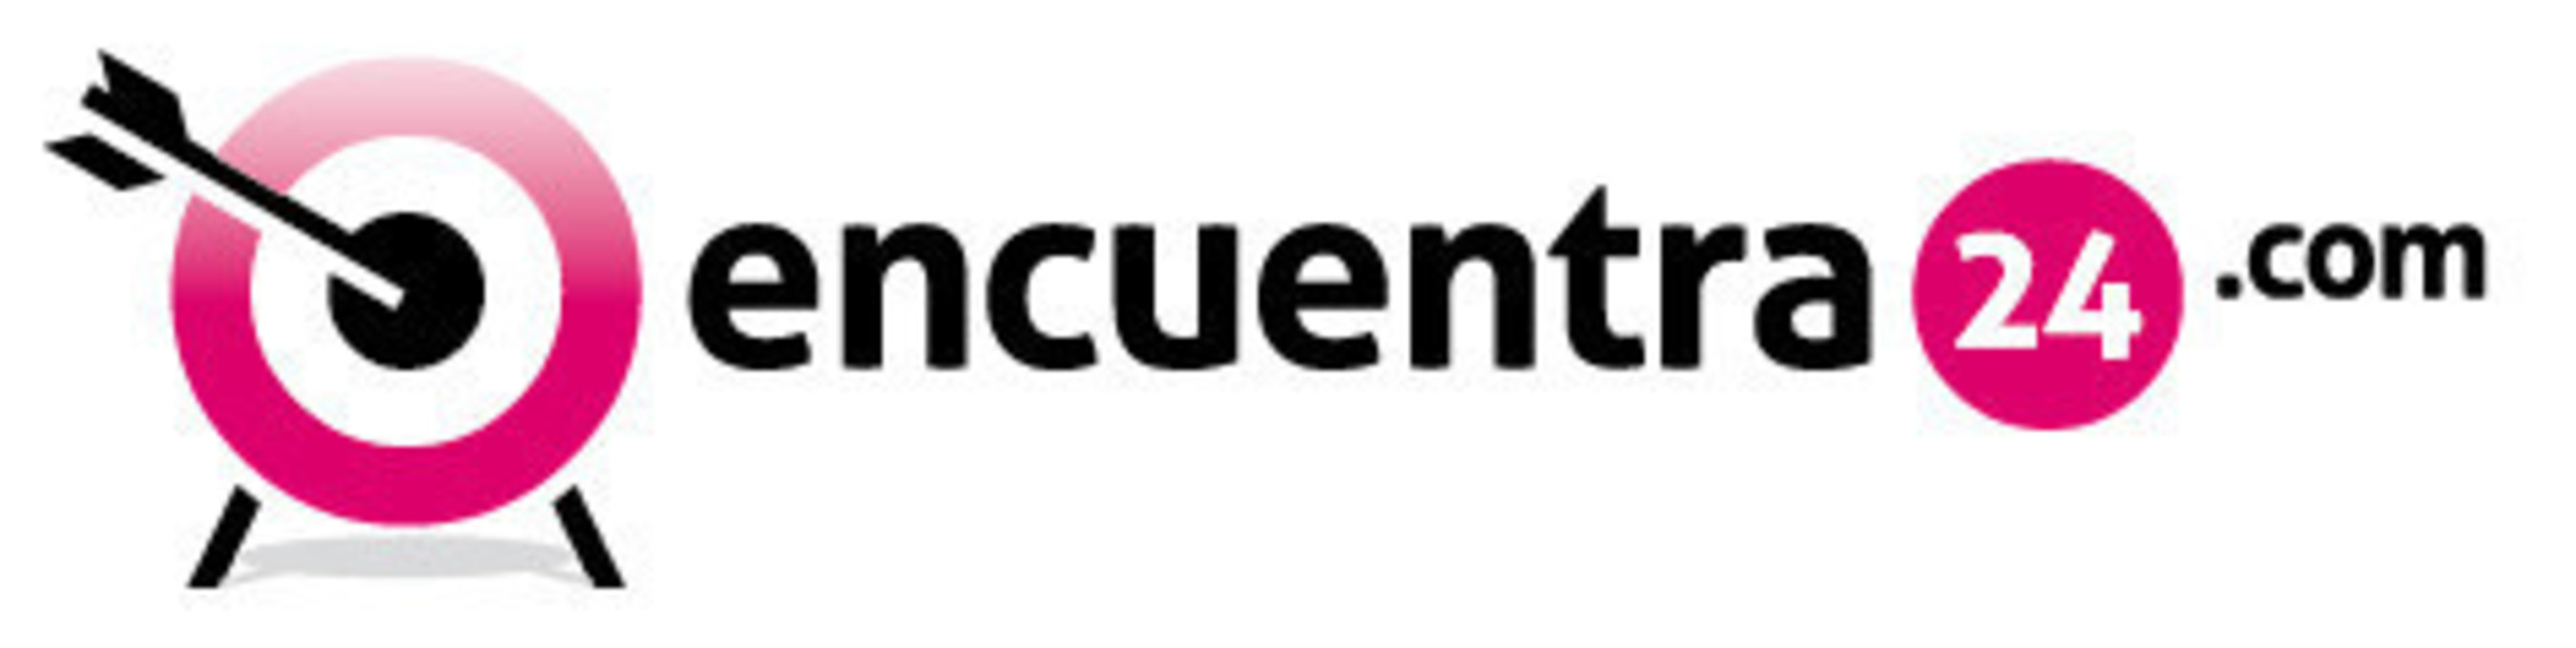 Encuentra24.com logo